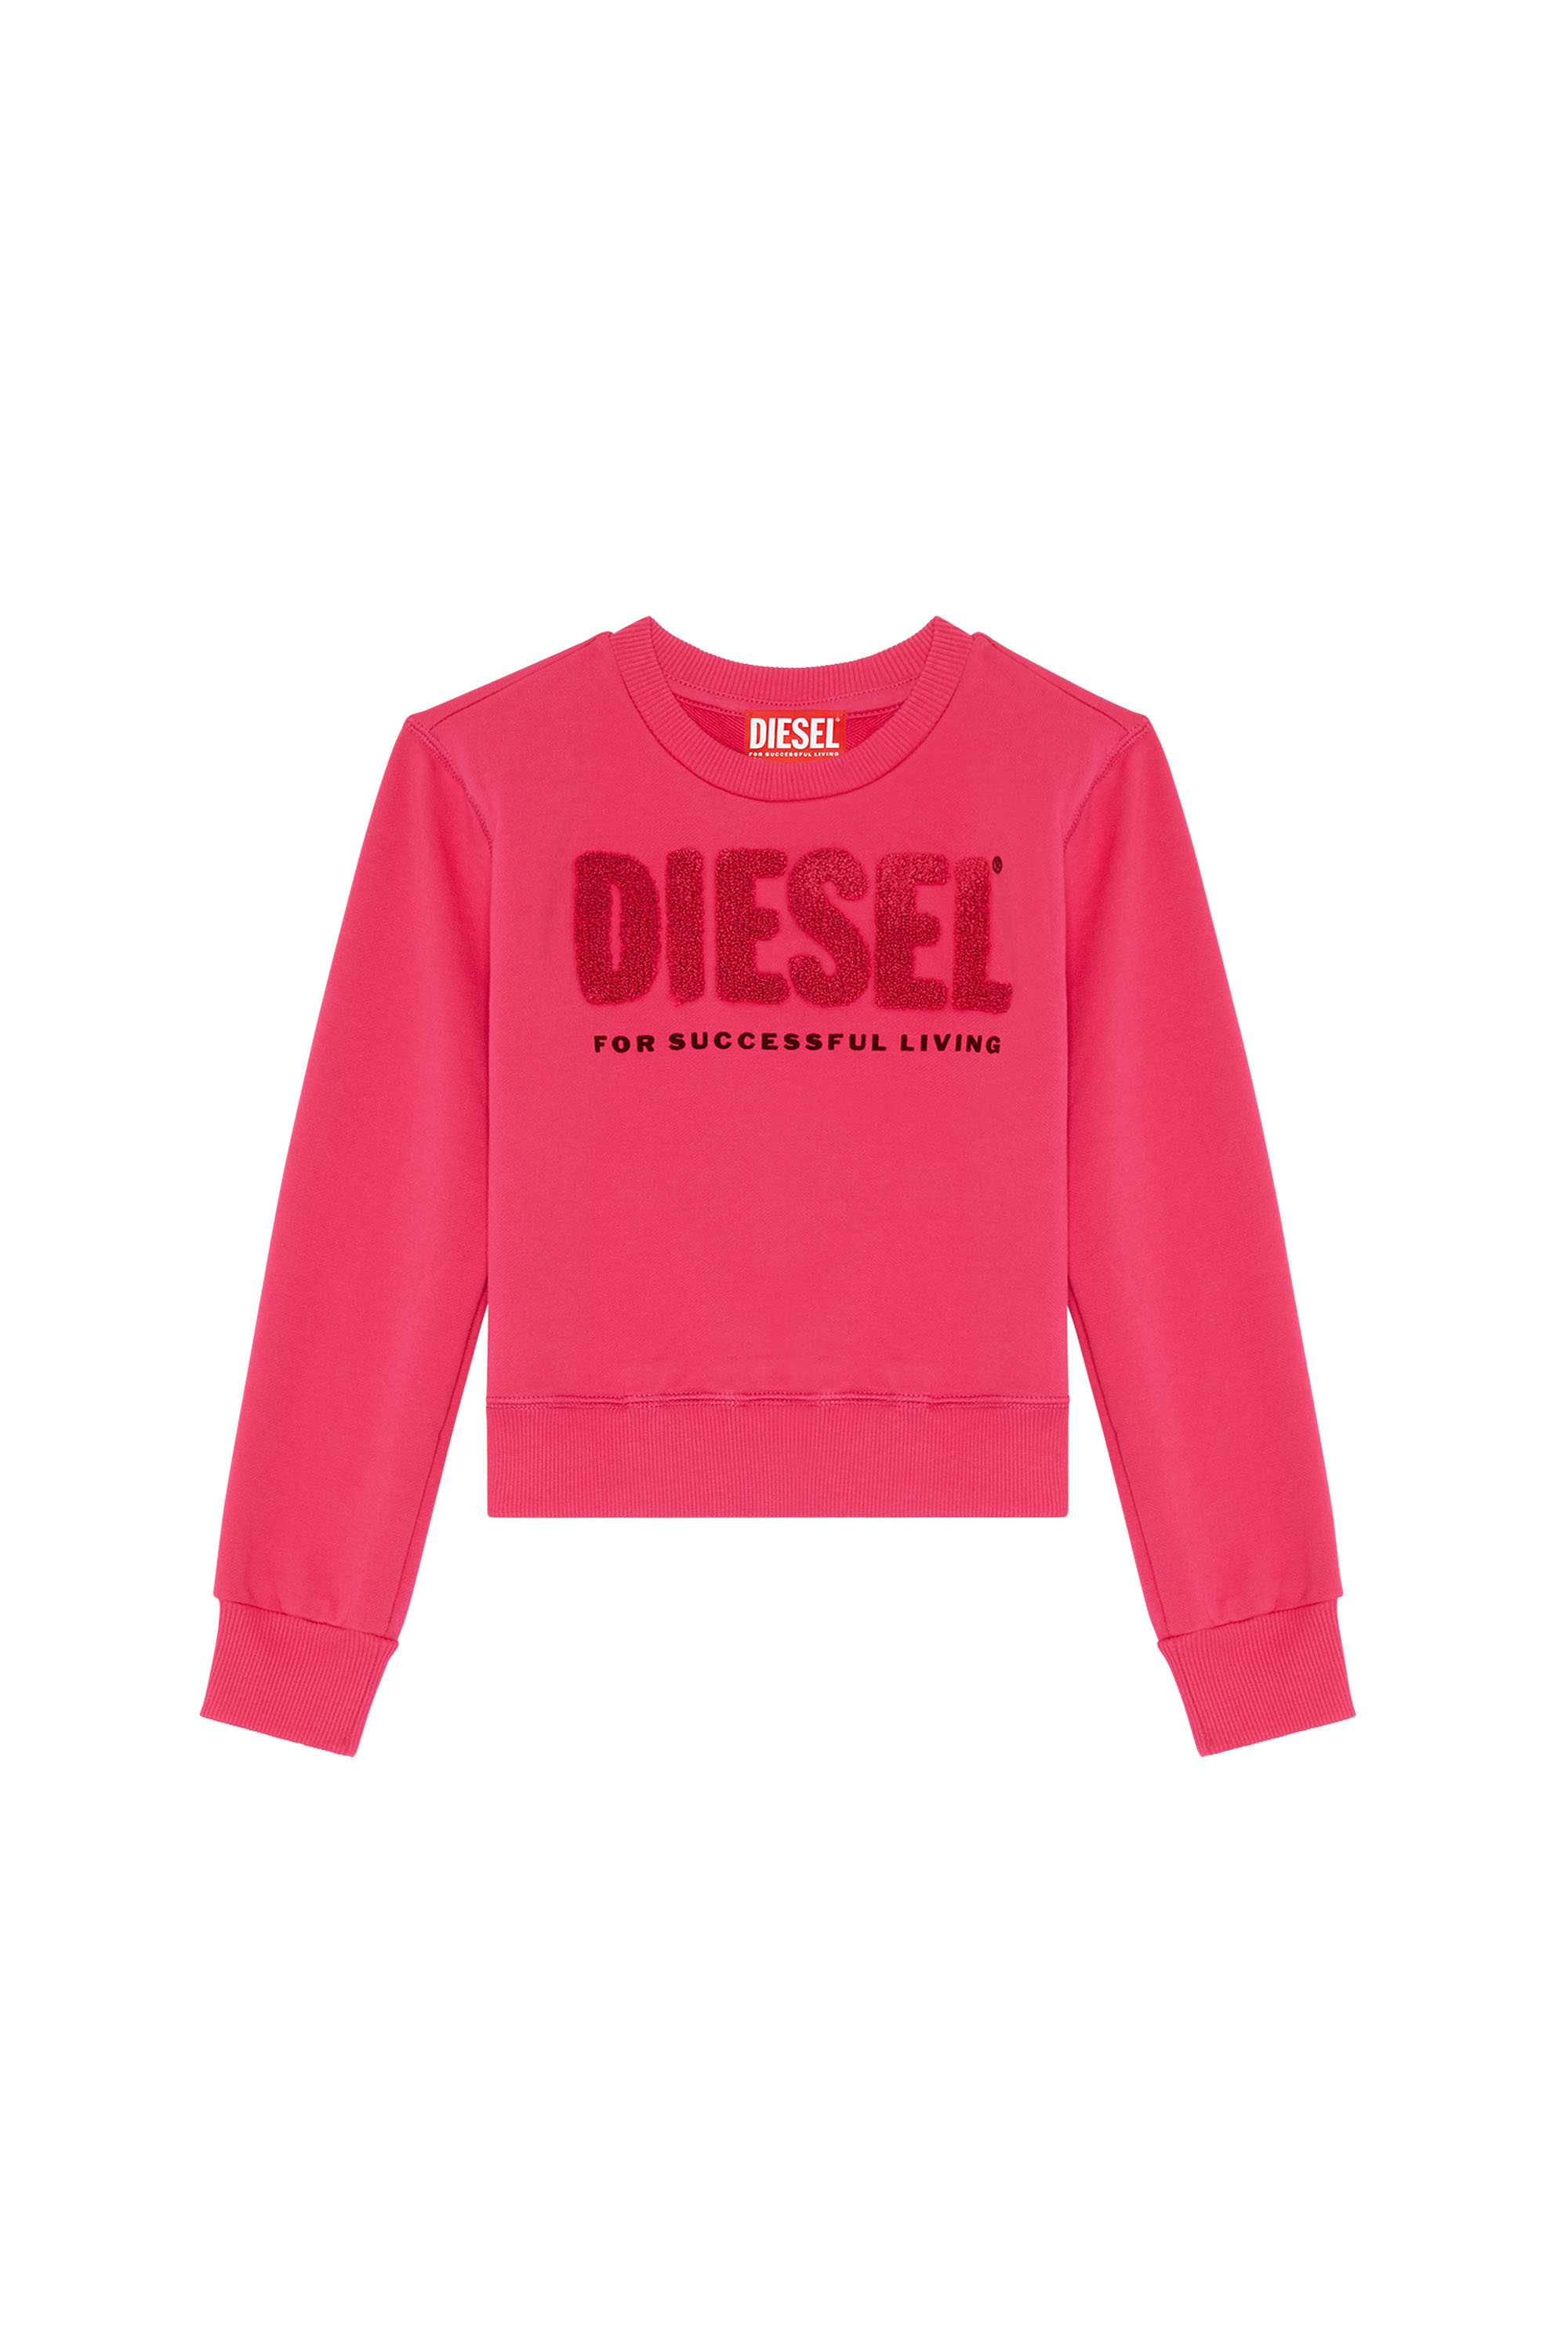 Diesel - SLIMMYDIE, Rosa - Image 1